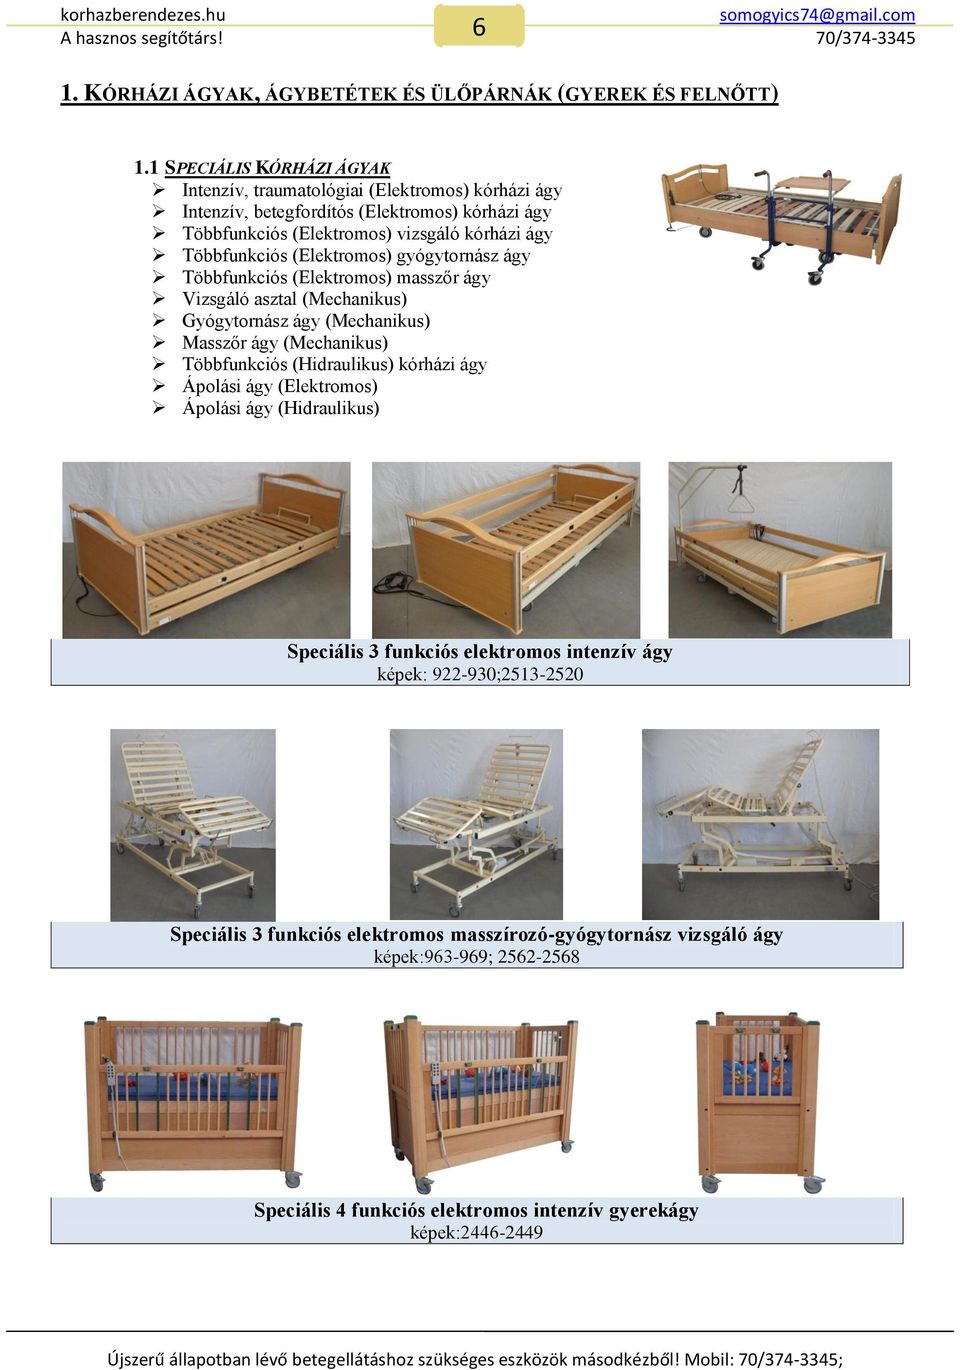 gyógytornász ágy Többfunkciós (Elektromos) masszőr ágy Vizsgáló asztal (Mechanikus) Gyógytornász ágy (Mechanikus) Masszőr ágy (Mechanikus) Többfunkciós (Hidraulikus) kórházi ágy Ápolási ágy